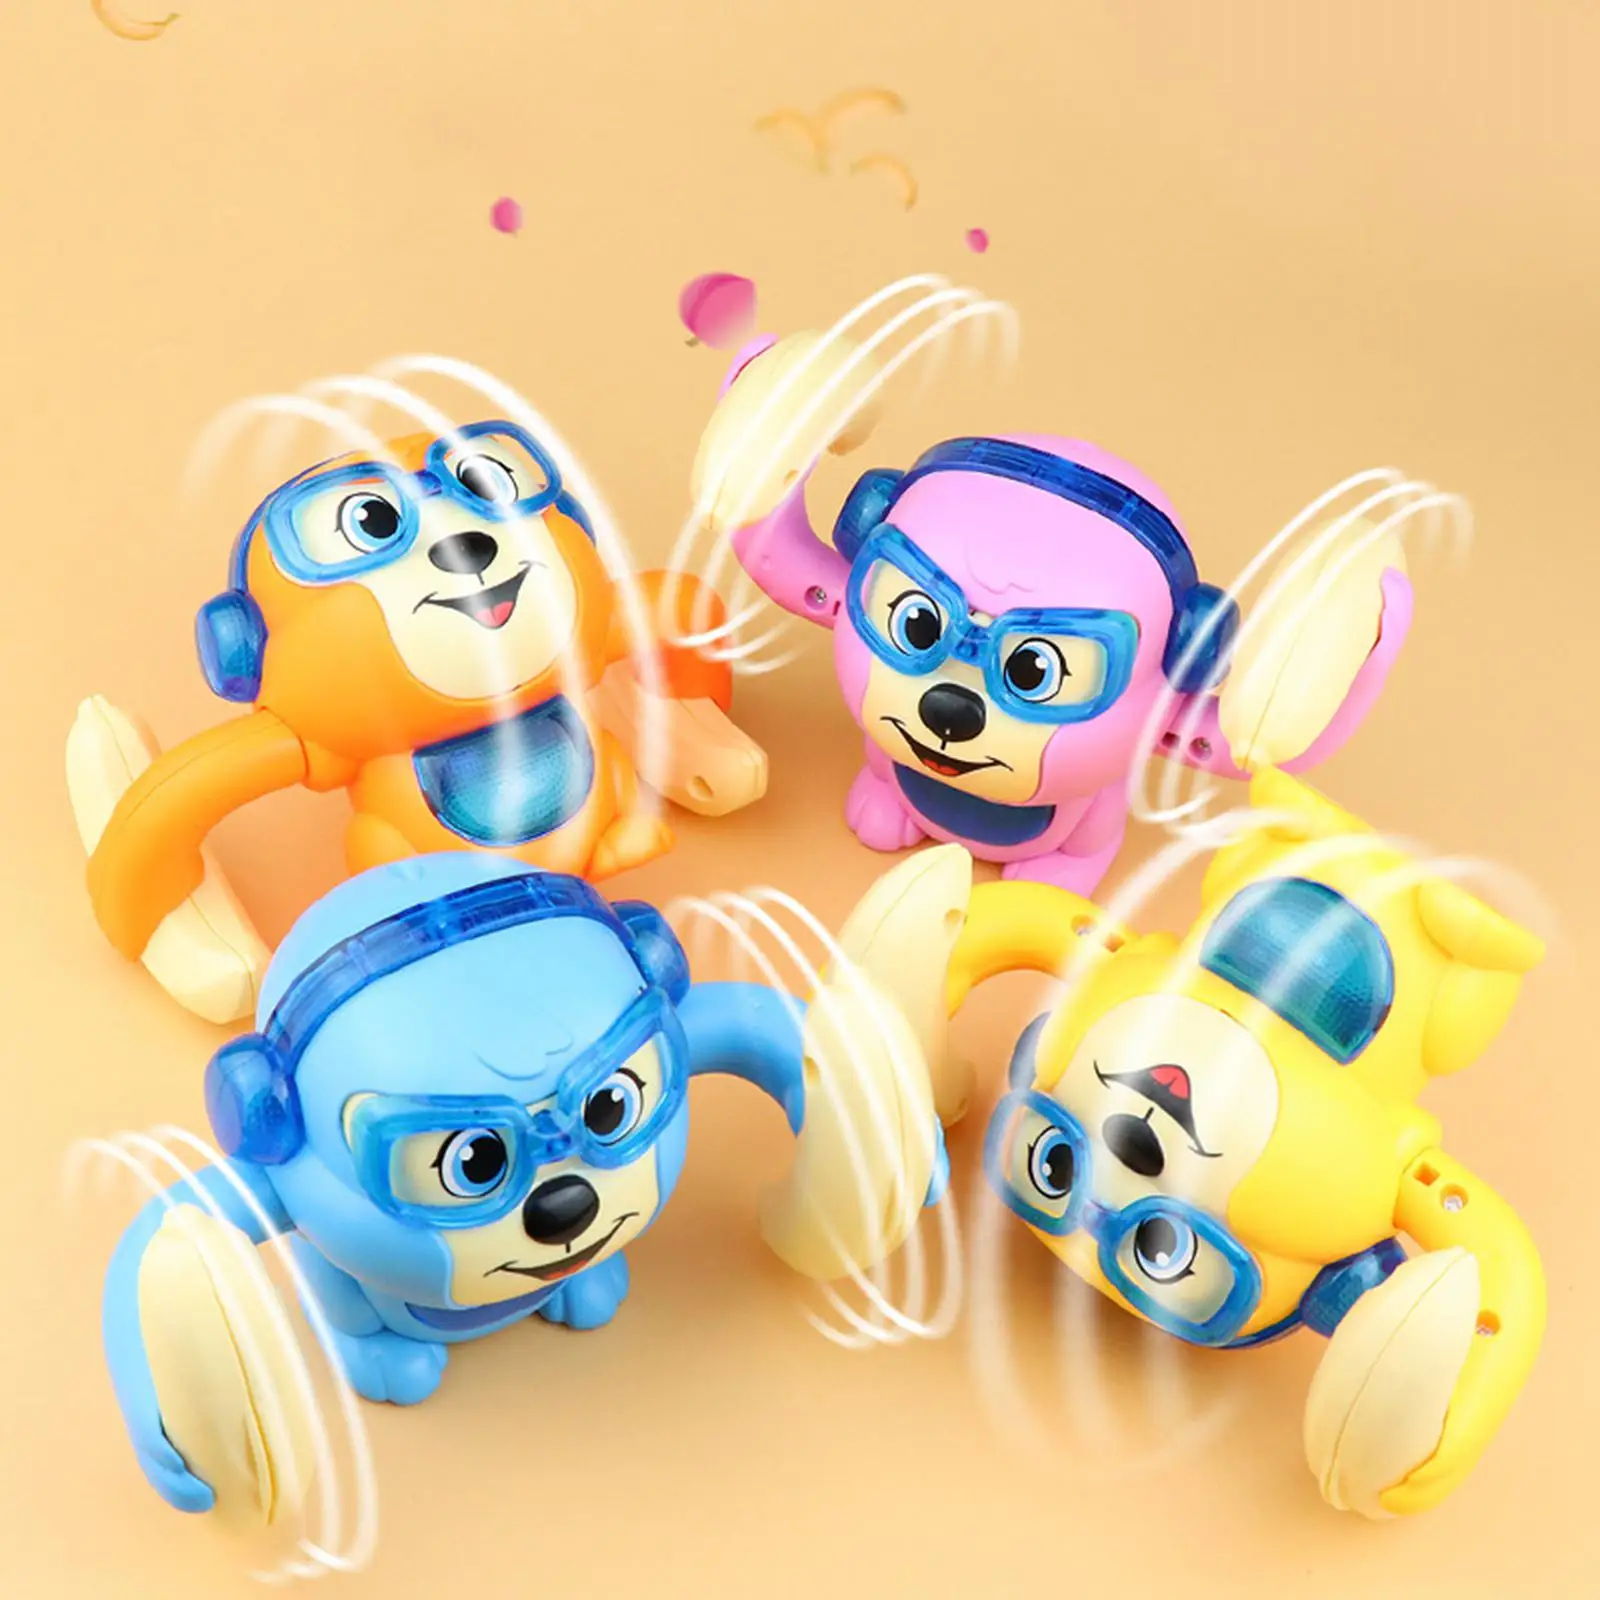 Monkey Musical Toys Walk Interactive Toy Monkey Crawling Baby Toy  Orange